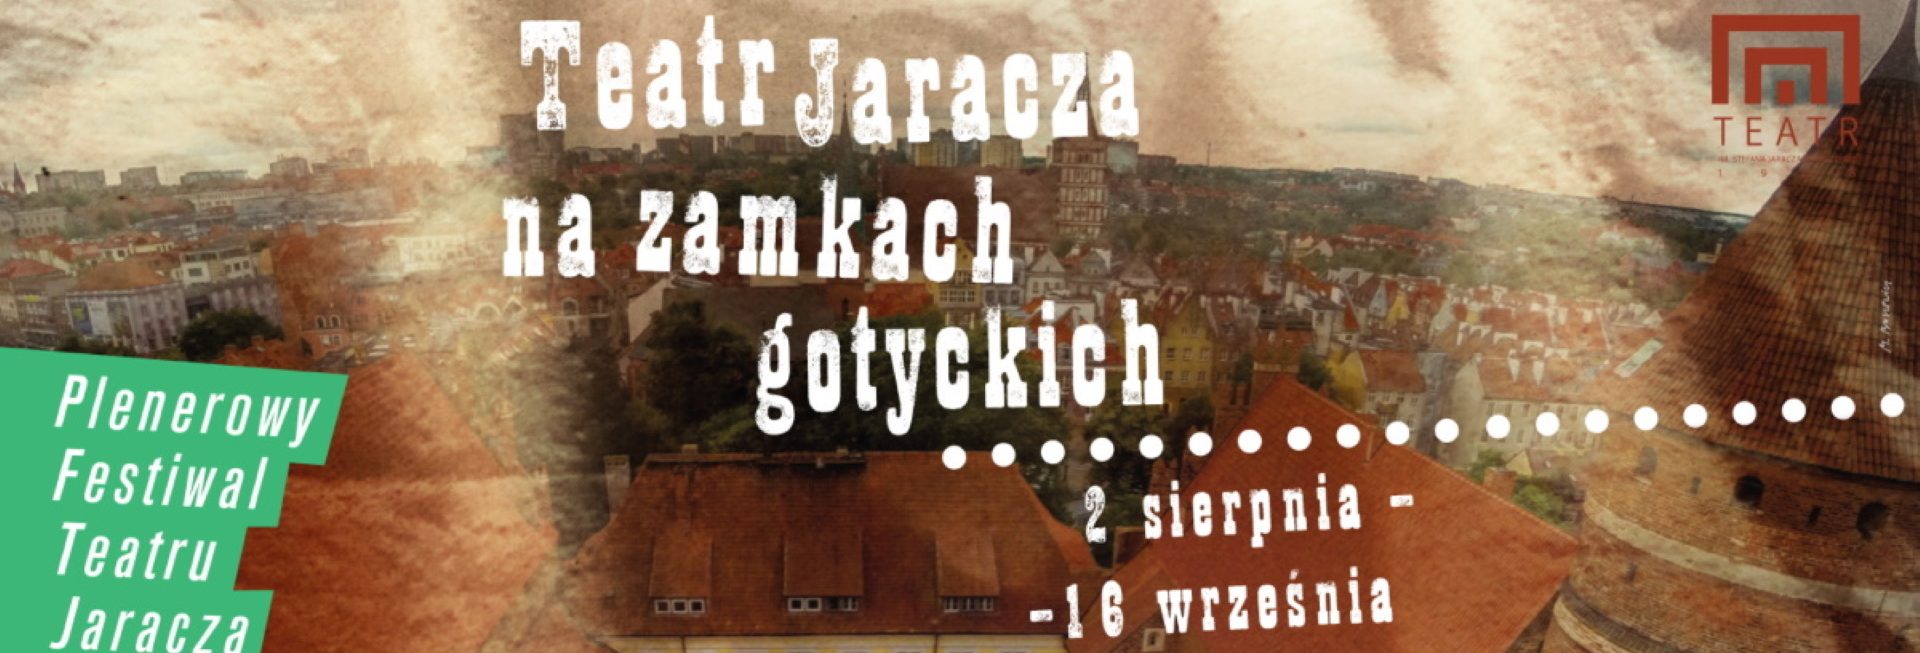 Plakat zapraszający do Zamku w Olsztynie na cykl spektakli - Teatr Jaracza na Zamkach Gotyckich. 